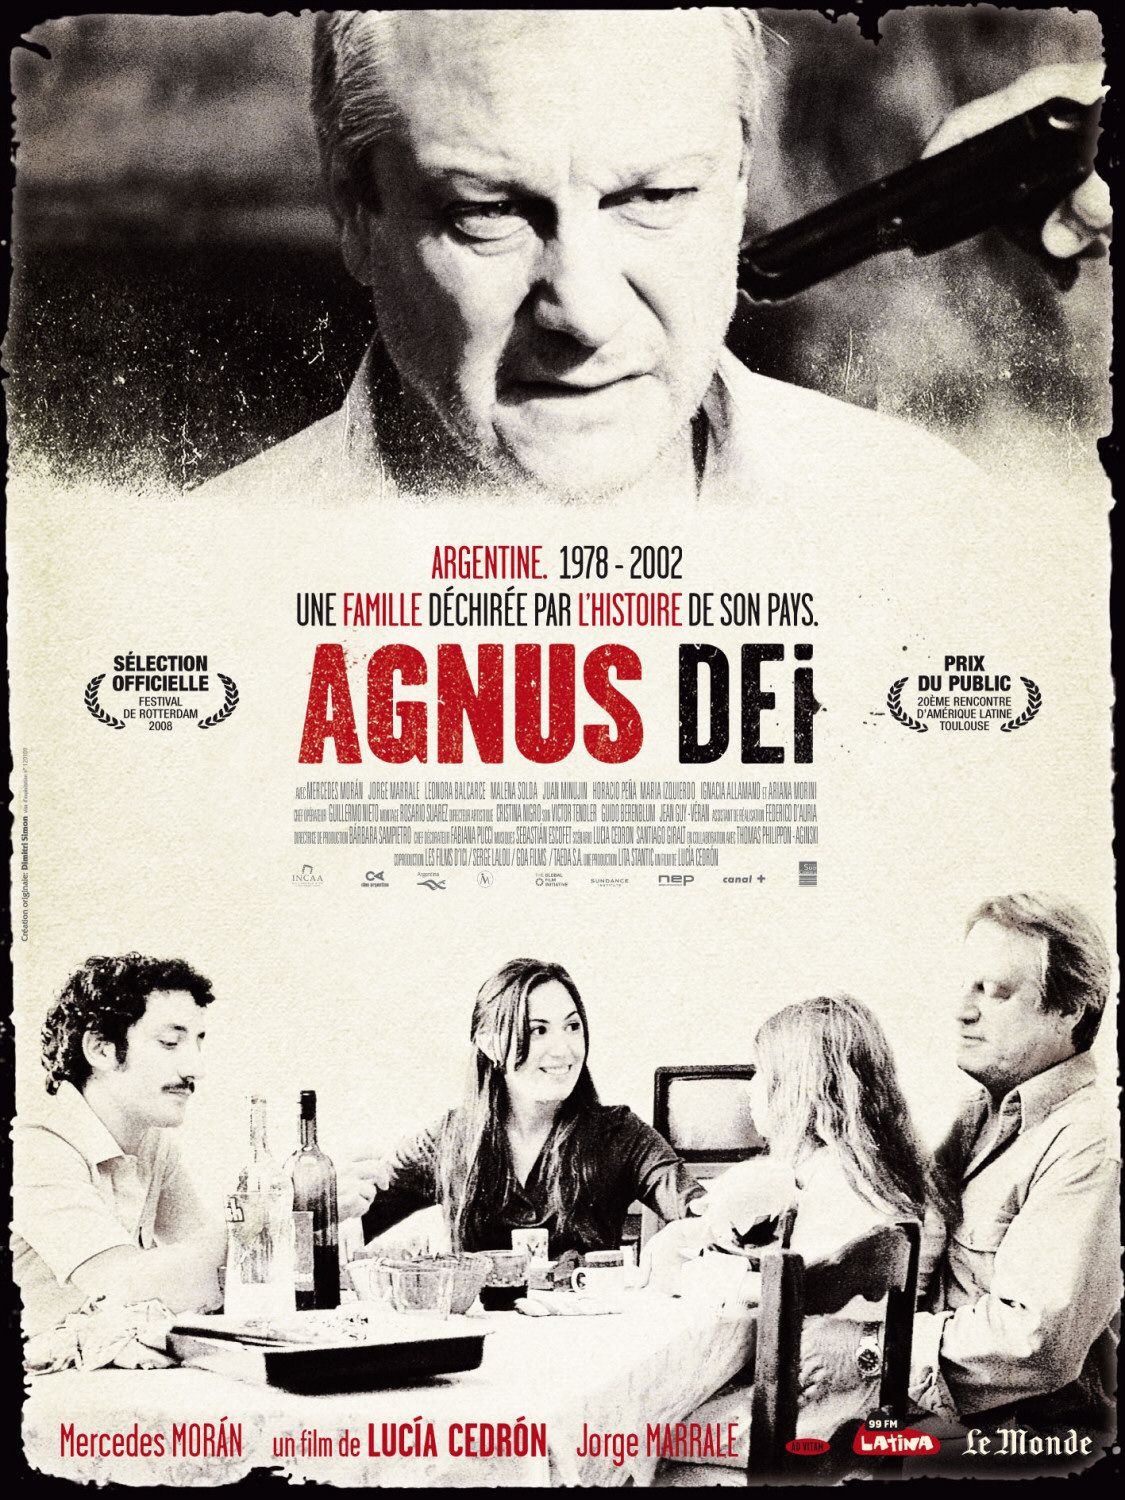 Agnus Dei movie